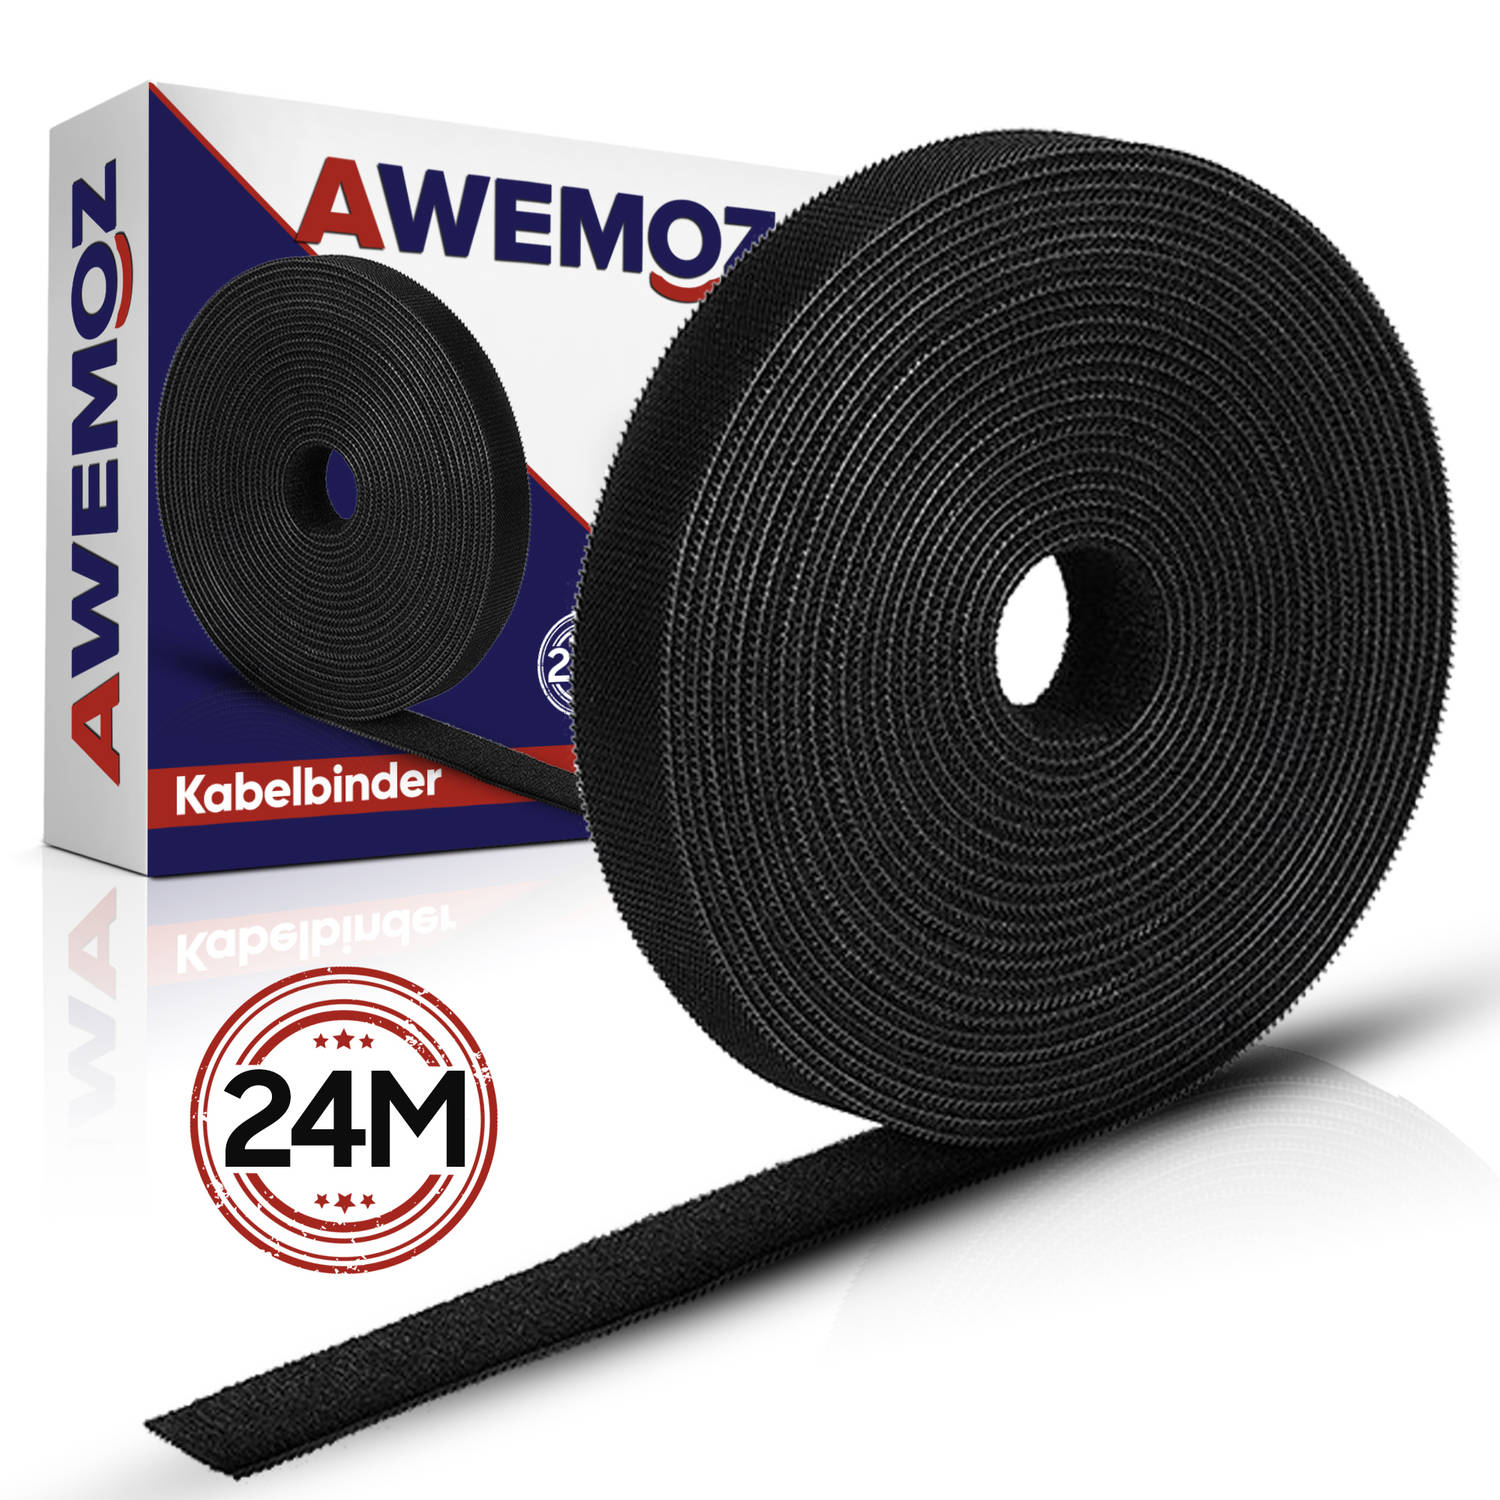 AWEMOZ Velcro Kabelbinders 24 Meter Lang Zwarte Kabel Organiser Kabel management Cable Organizer